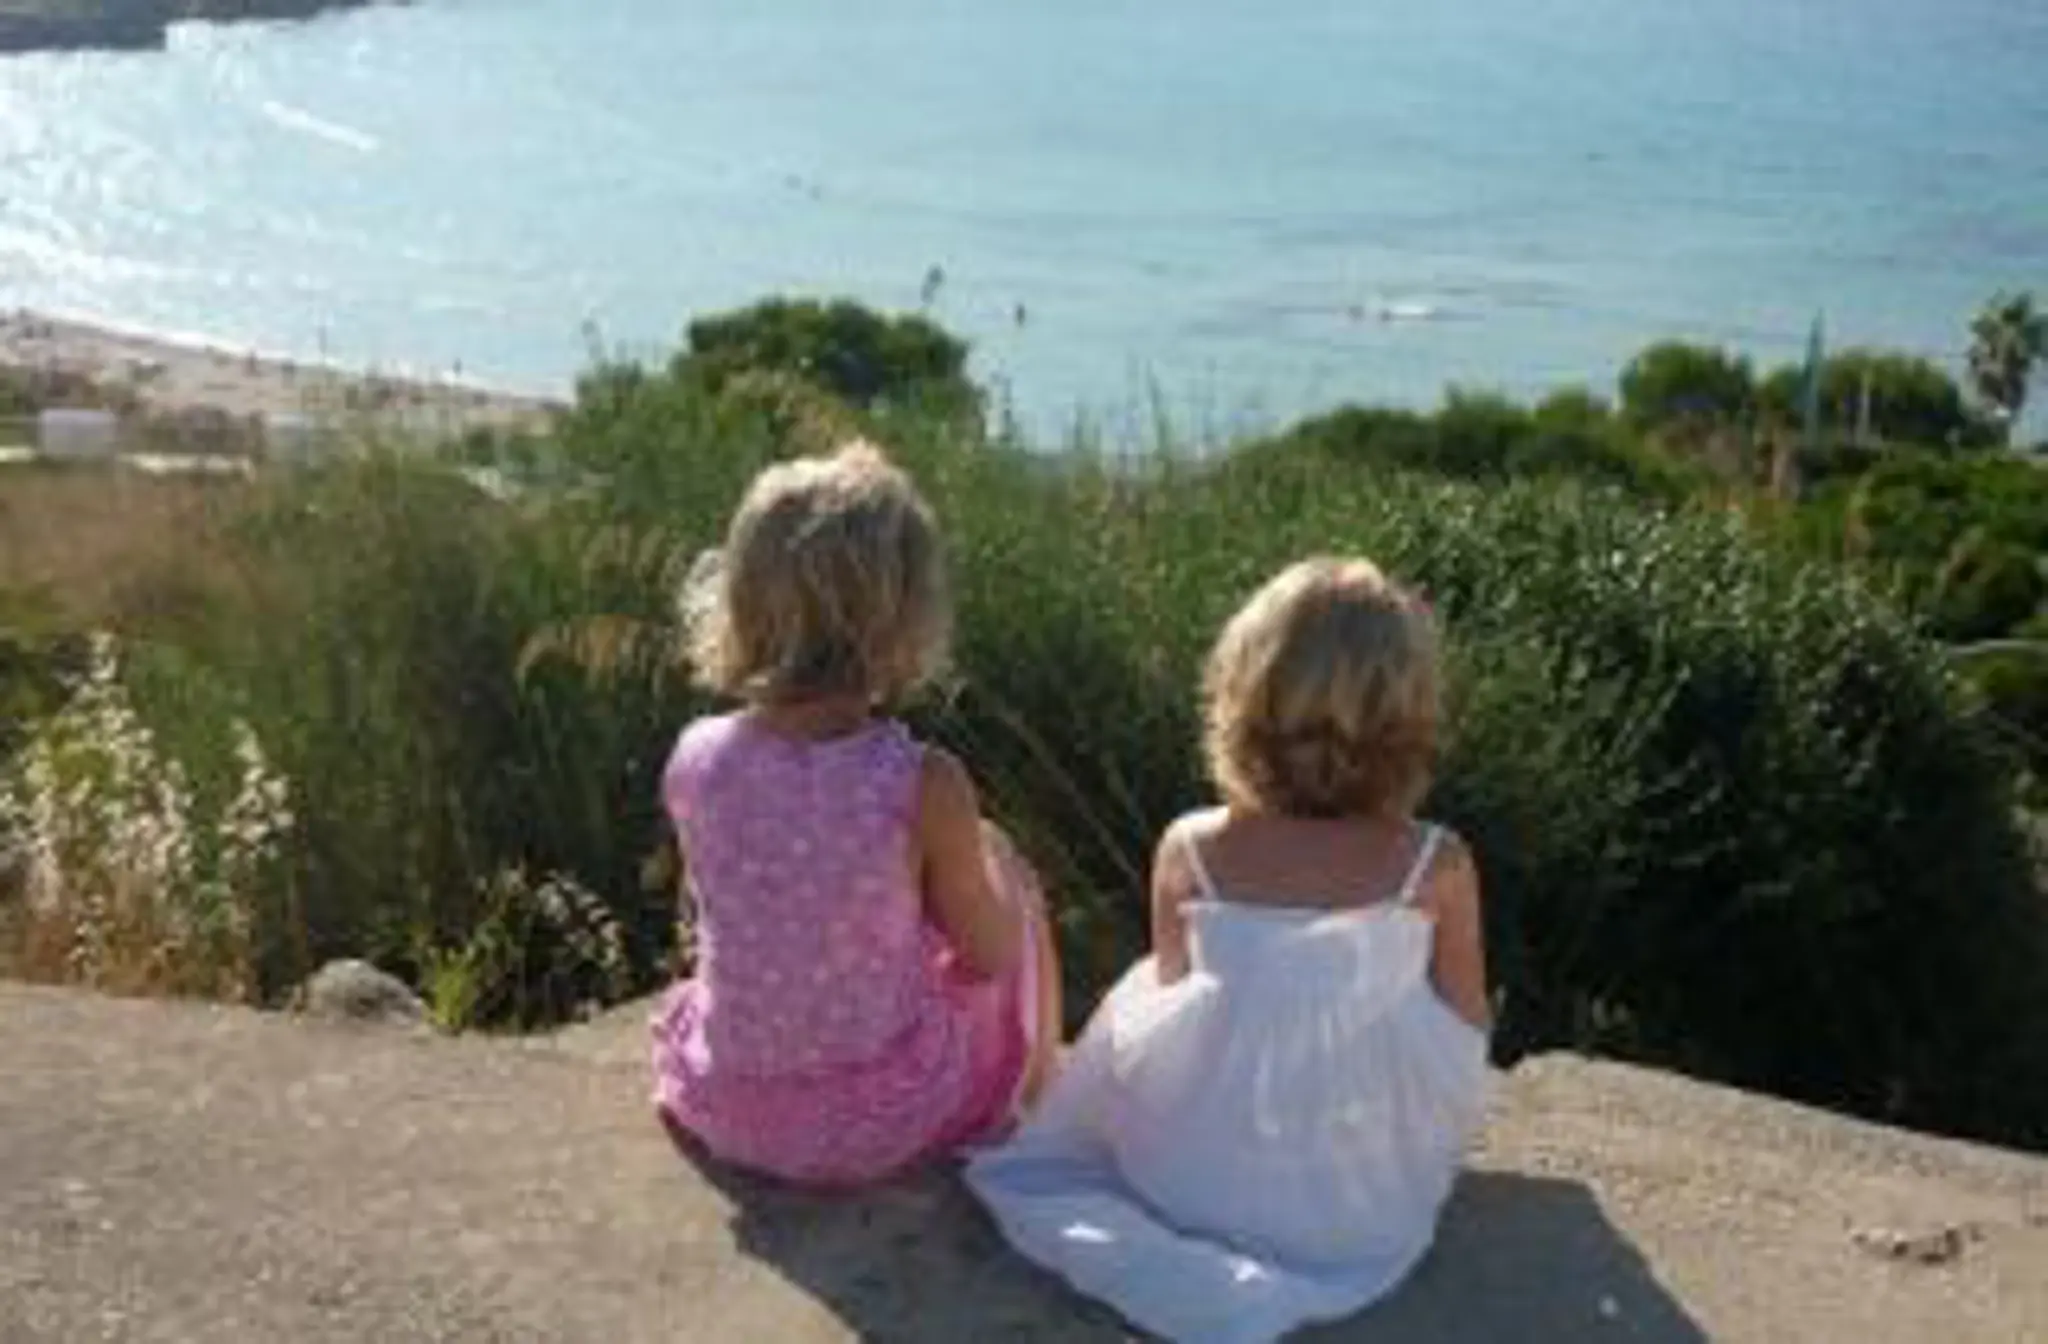 Freizeitaktivitäten für Kinder im Urlaub auf Ibiza